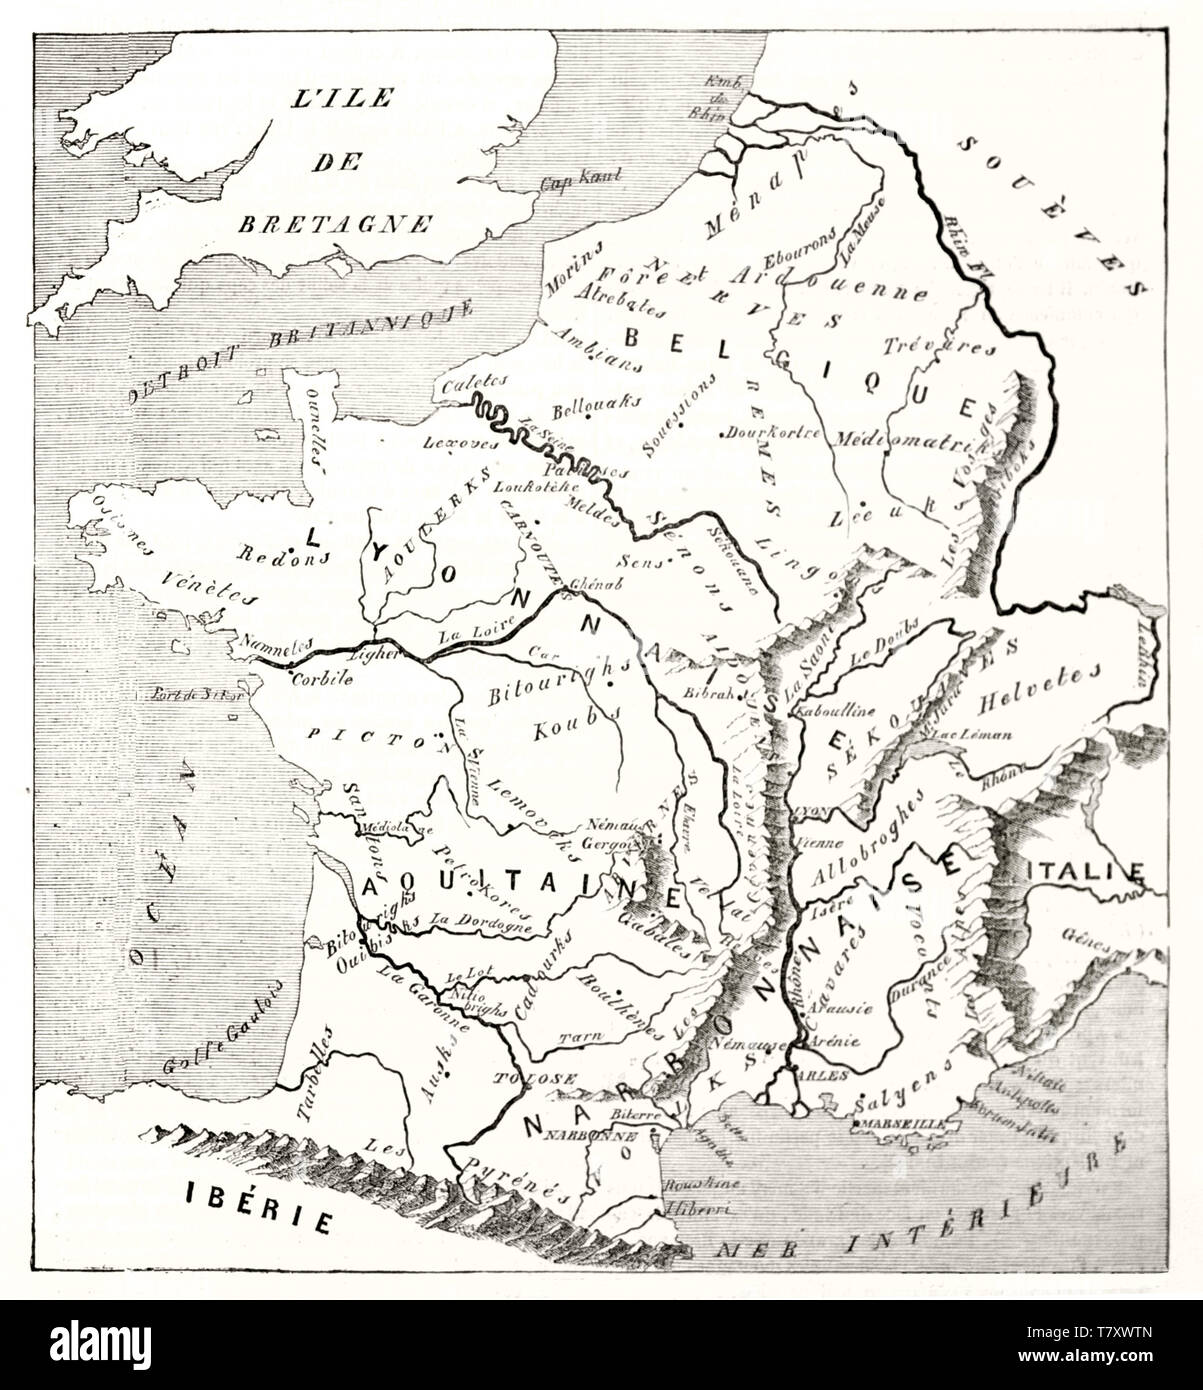 La Gaule, la France d'aujourd'hui, vieille carte, comme Strabon pourrait avoir conçu. En blanc et blanc illustration par MacCarthy publ. sur Magasin pittoresque Paris 1848 Banque D'Images